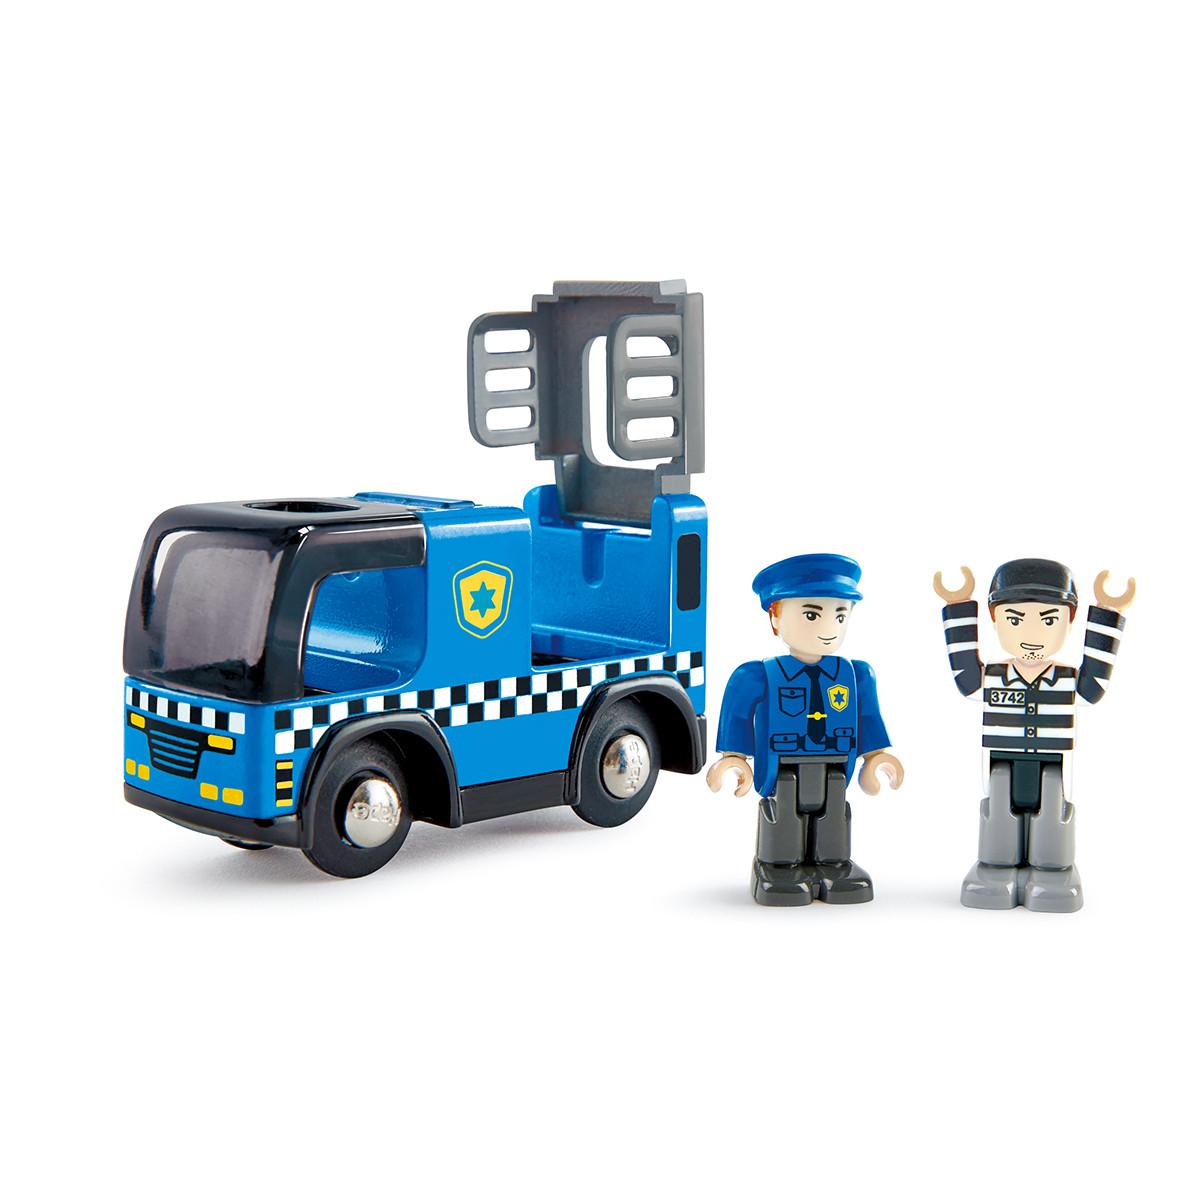 Selected image for HAPE Dečija igračka policijski auto E3738A plavi